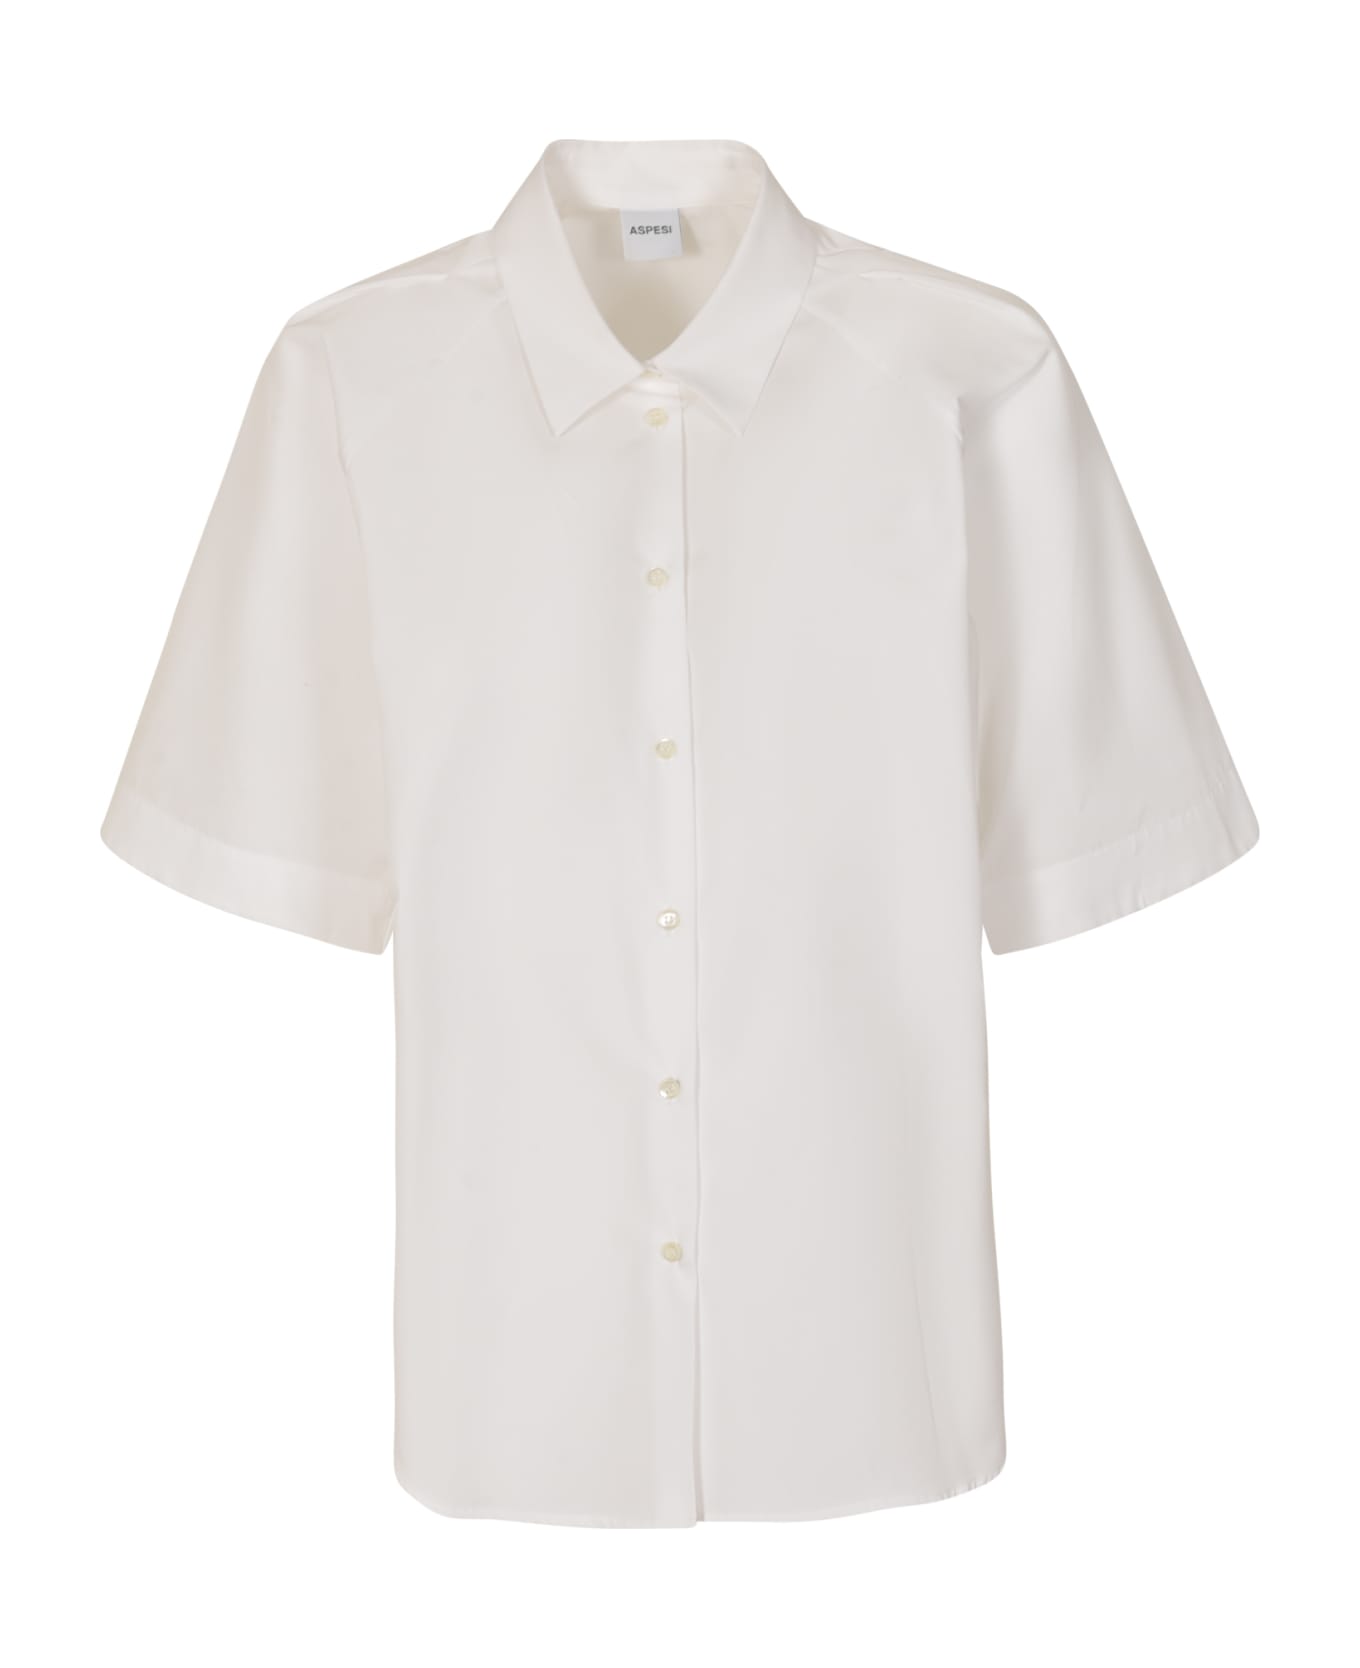 Aspesi Short-sleeved Plain Shirt - White